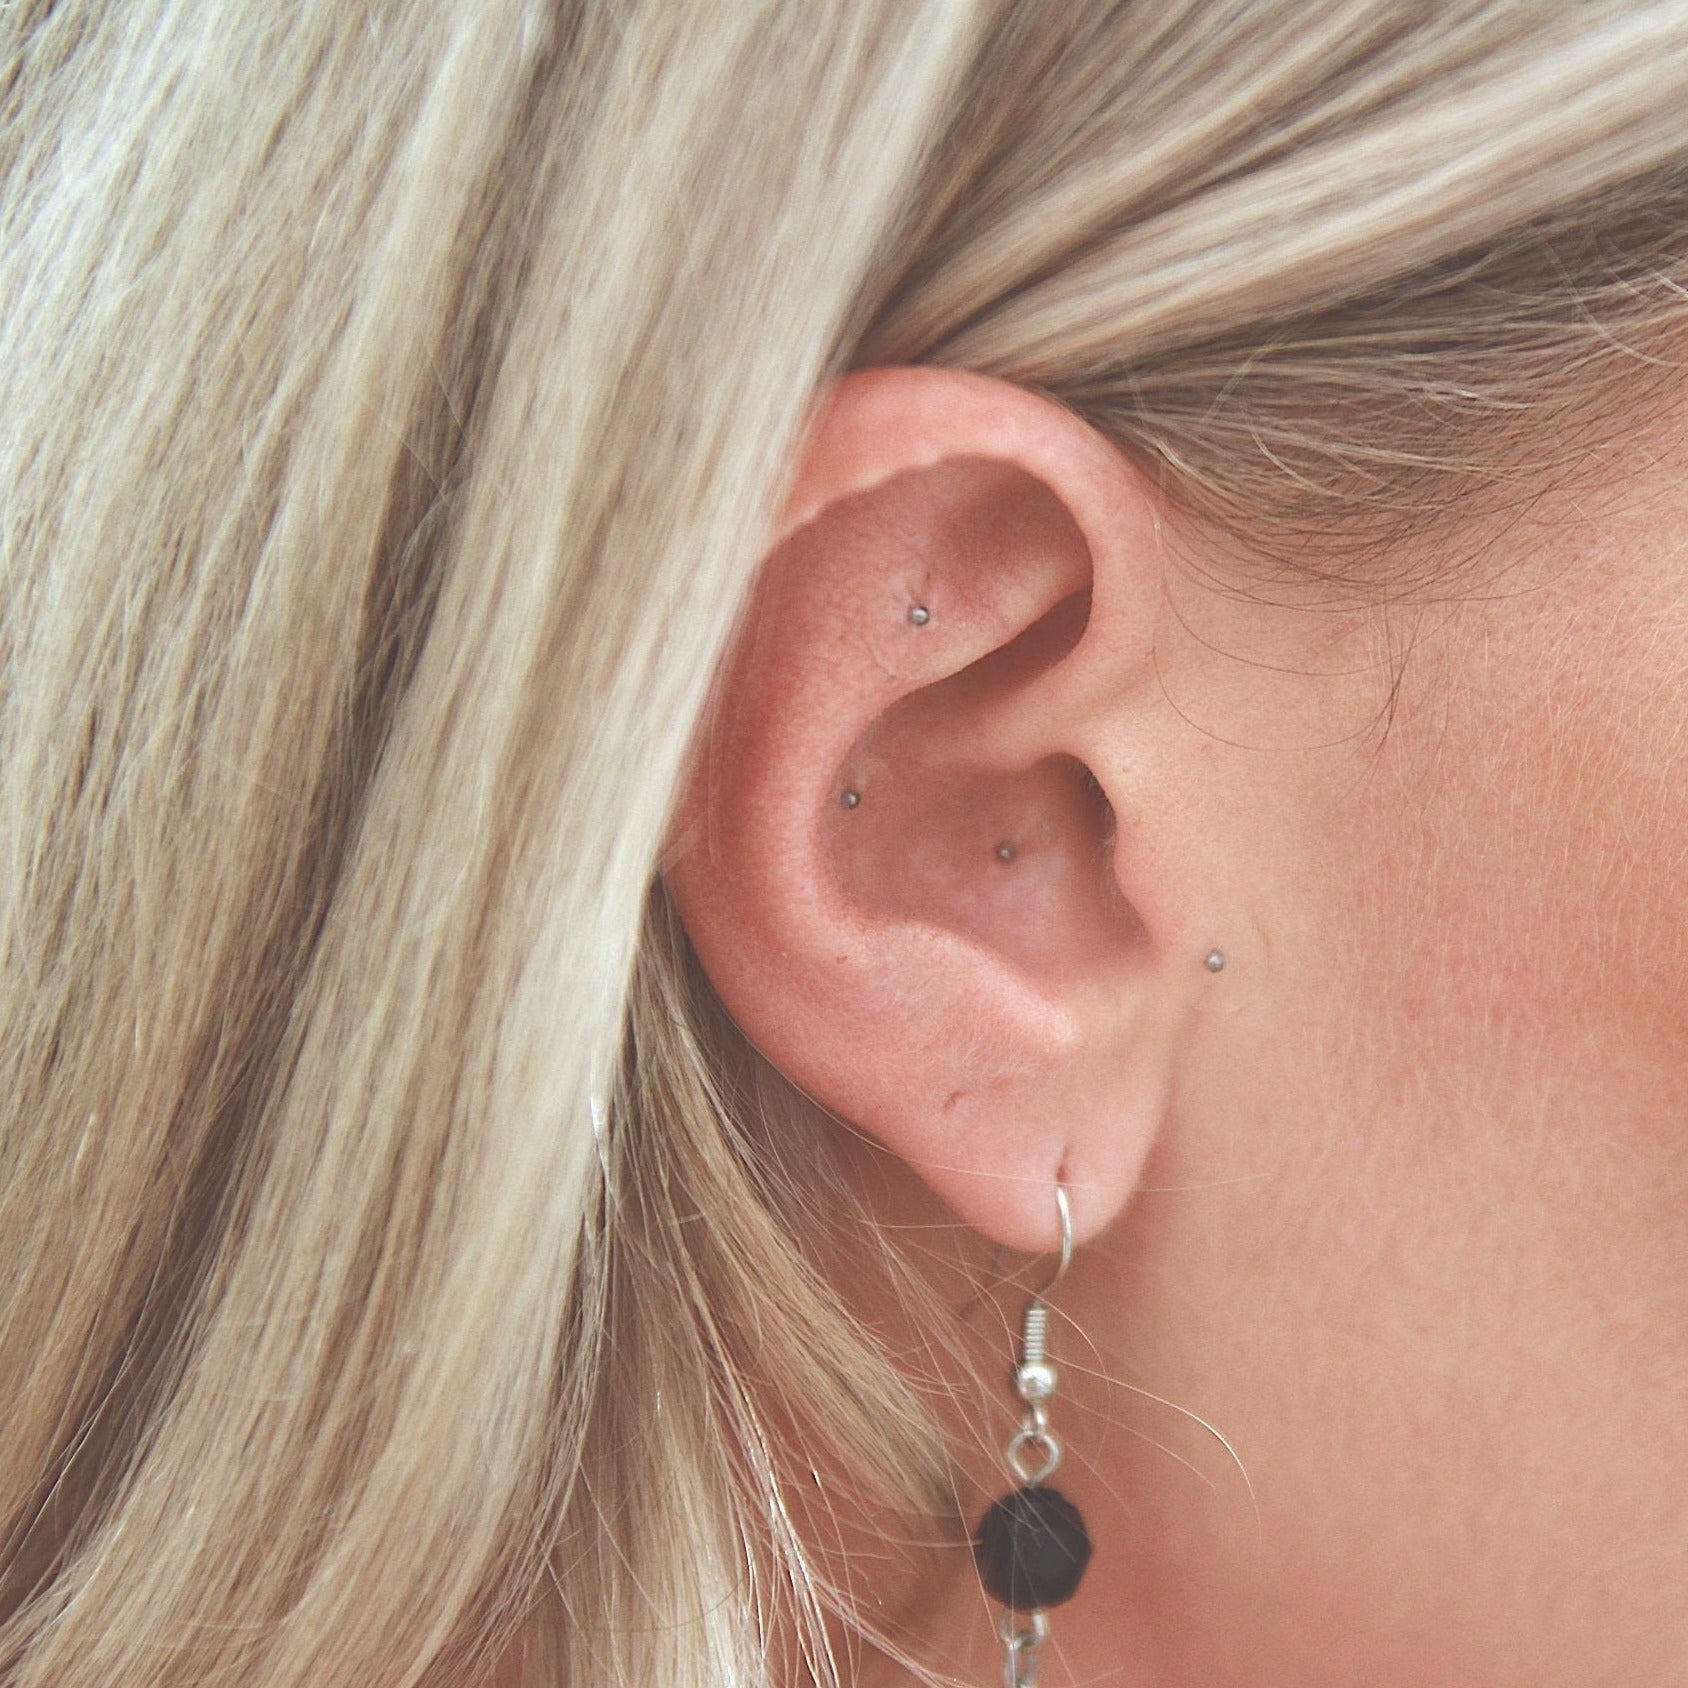 Eine blonde Frau trägt silberne Ear Seeds an ihrem Ohr.